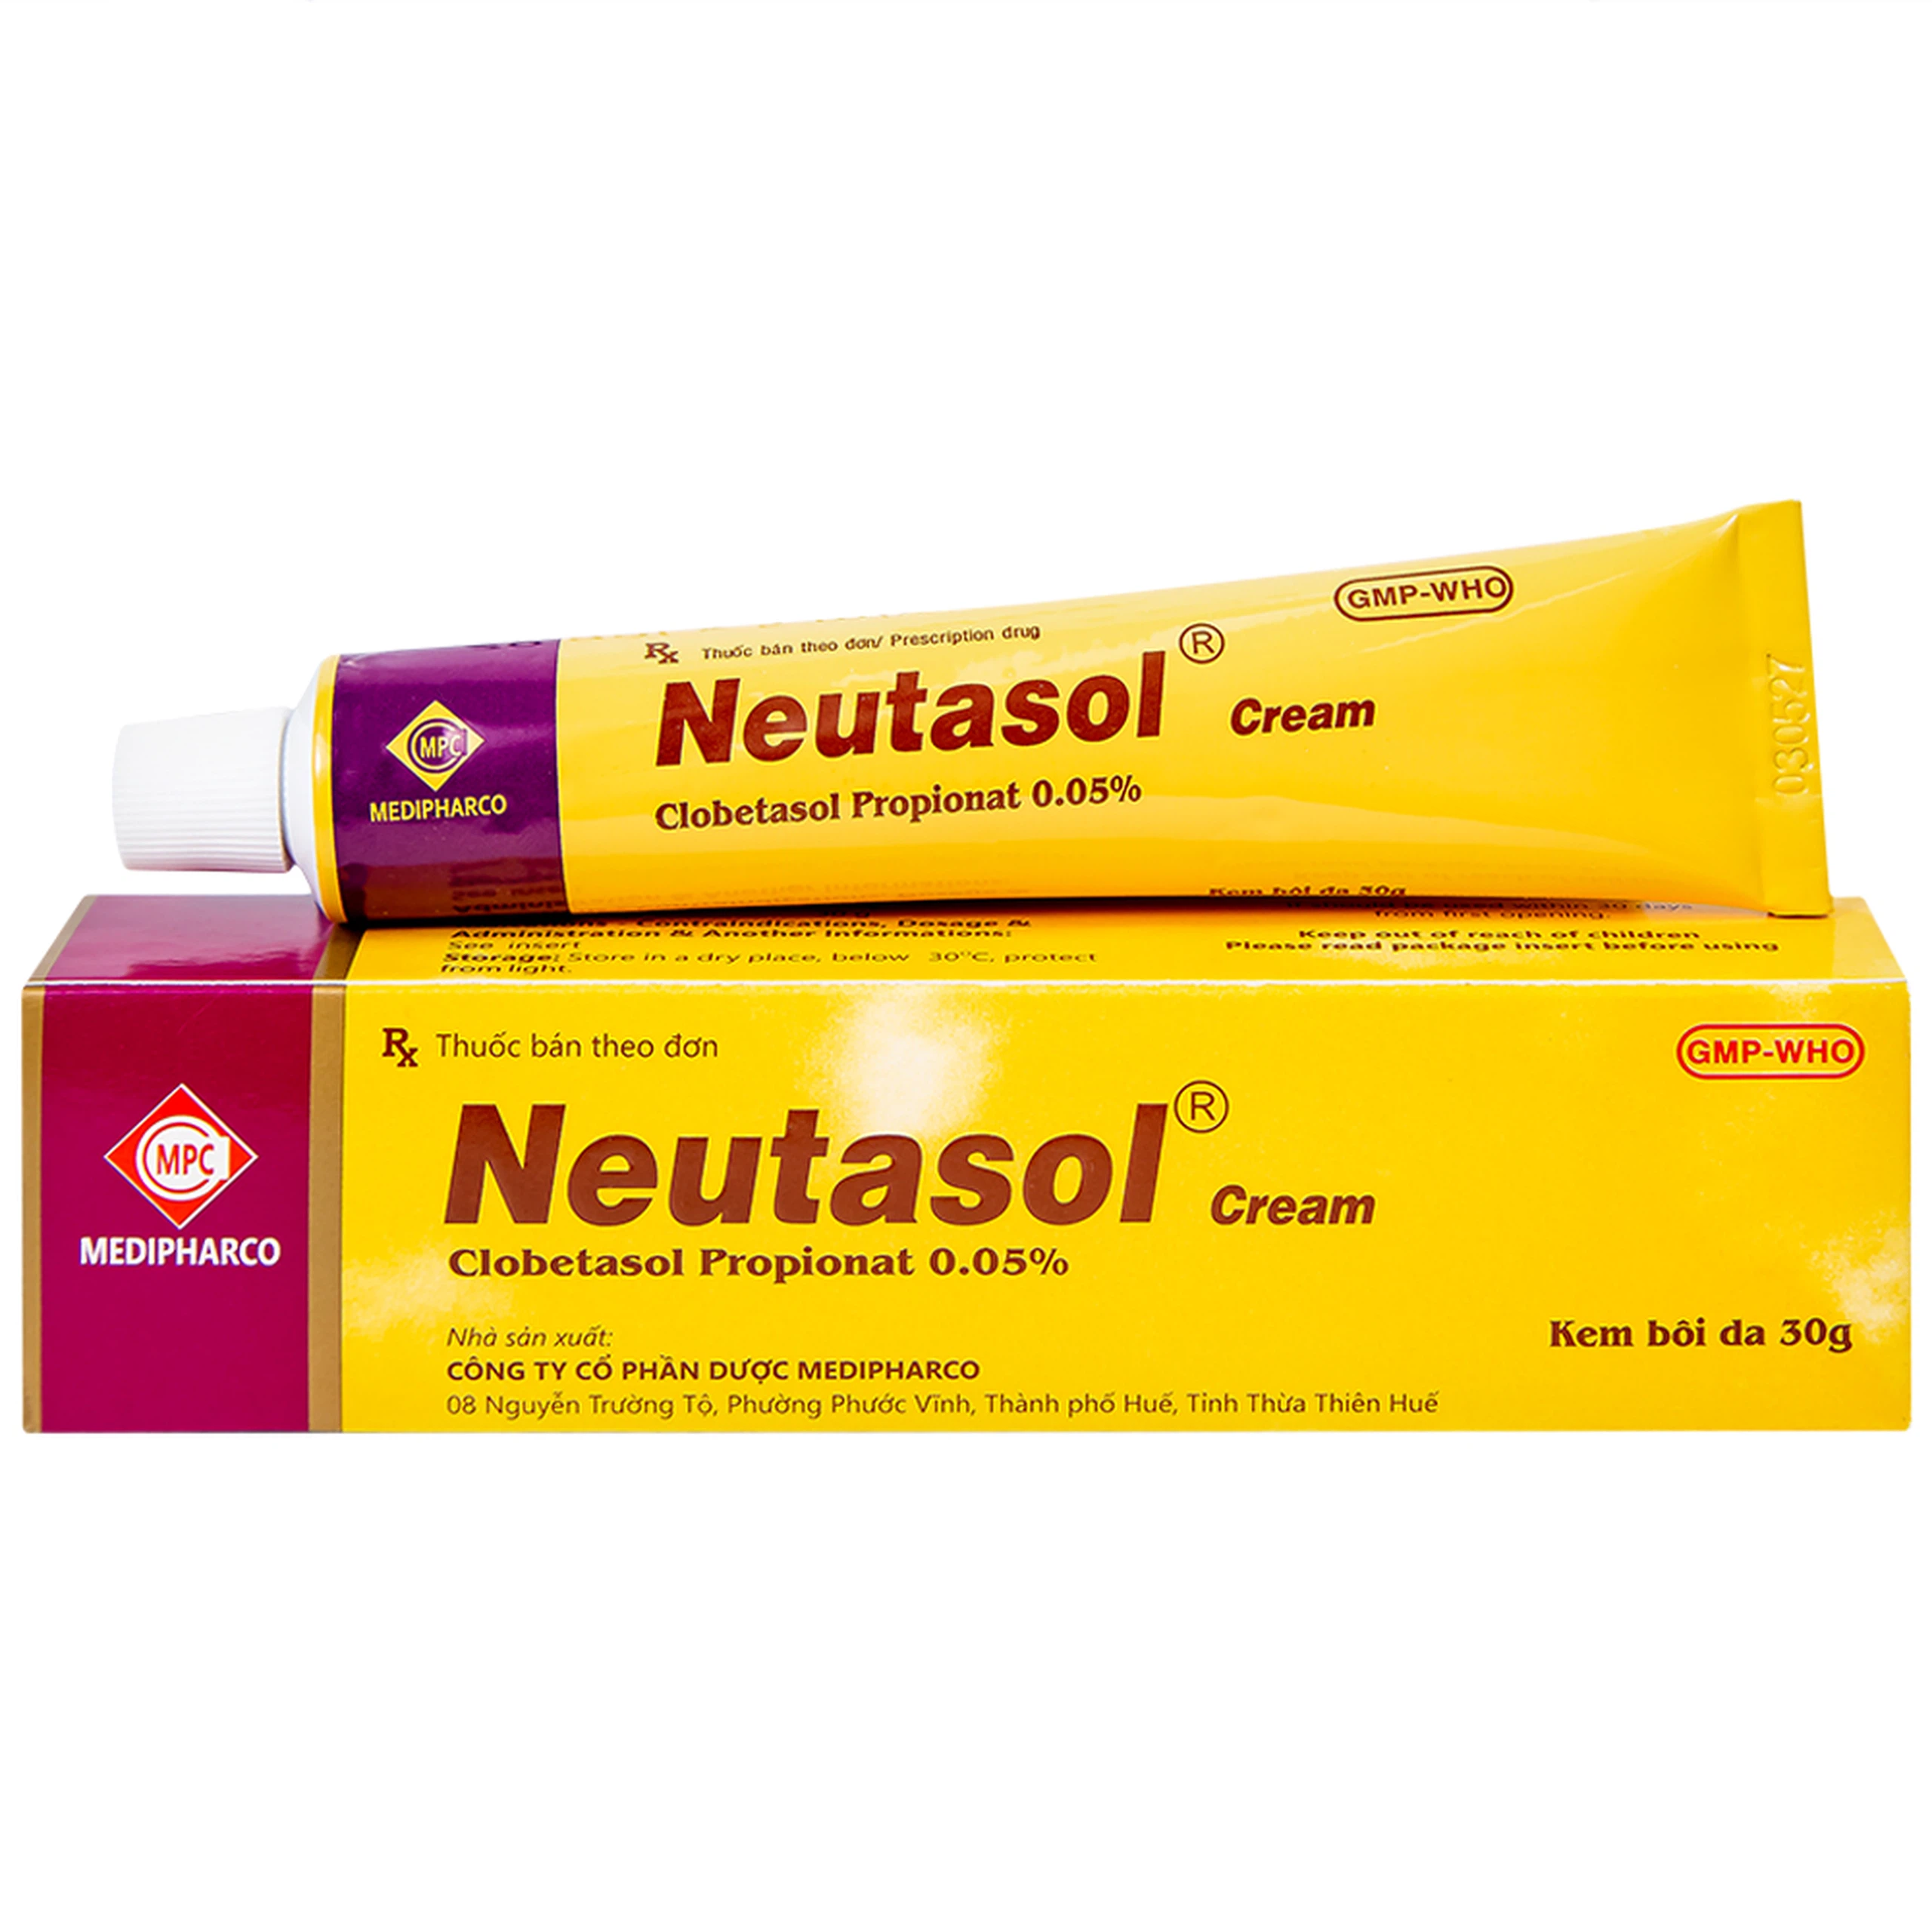 Kem bôi da Neutasol Medipharco điều trị chàm, liken, vảy nến, lupus ban đỏ (30g)